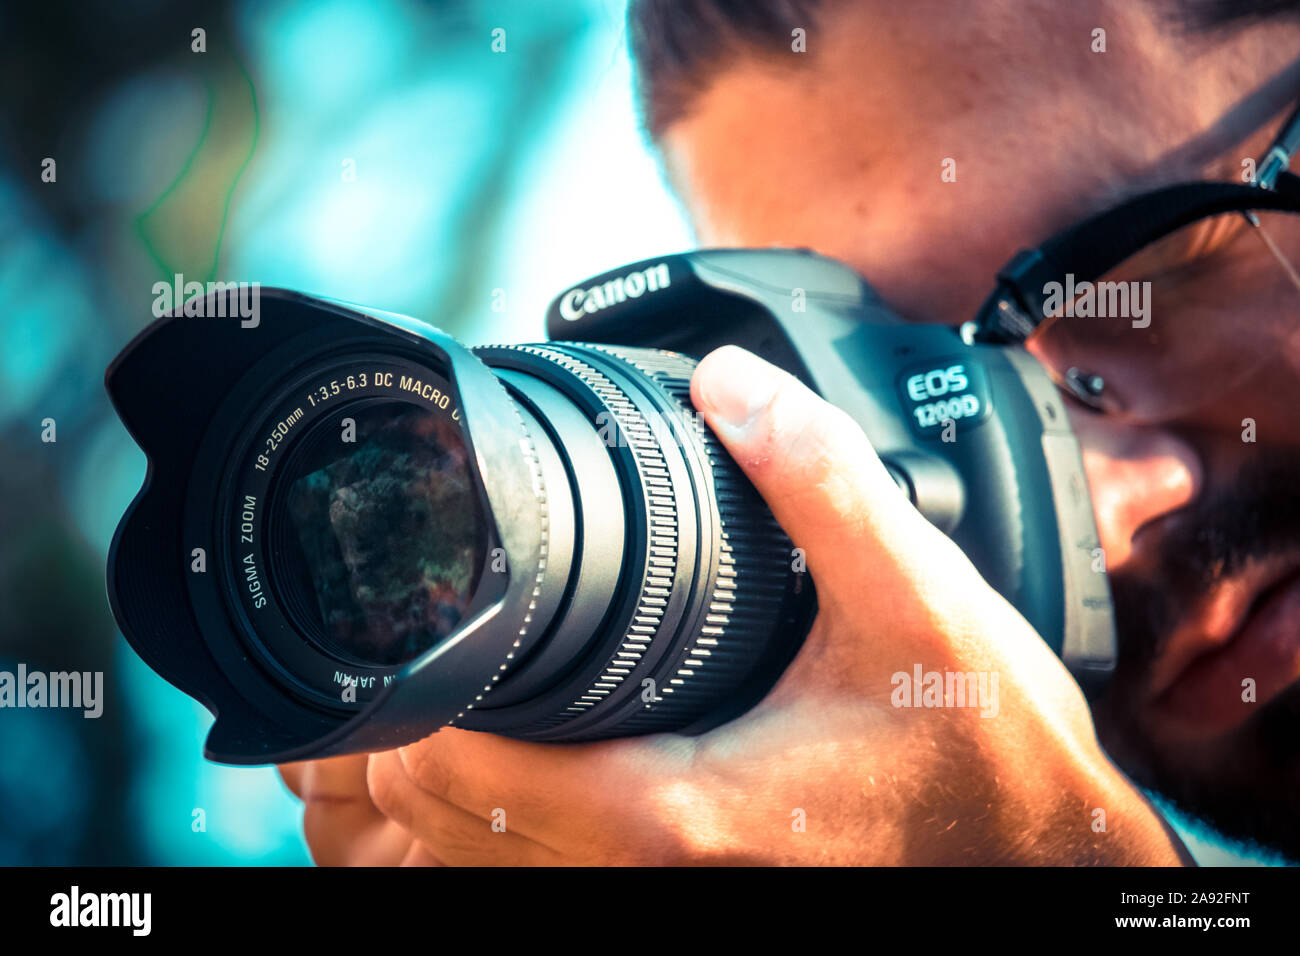 Fotografo tenendo un Canon 1200d con fotocamera Sigma 18-250 lens.guardando  attraverso il mirino per scattare una foto Foto stock - Alamy